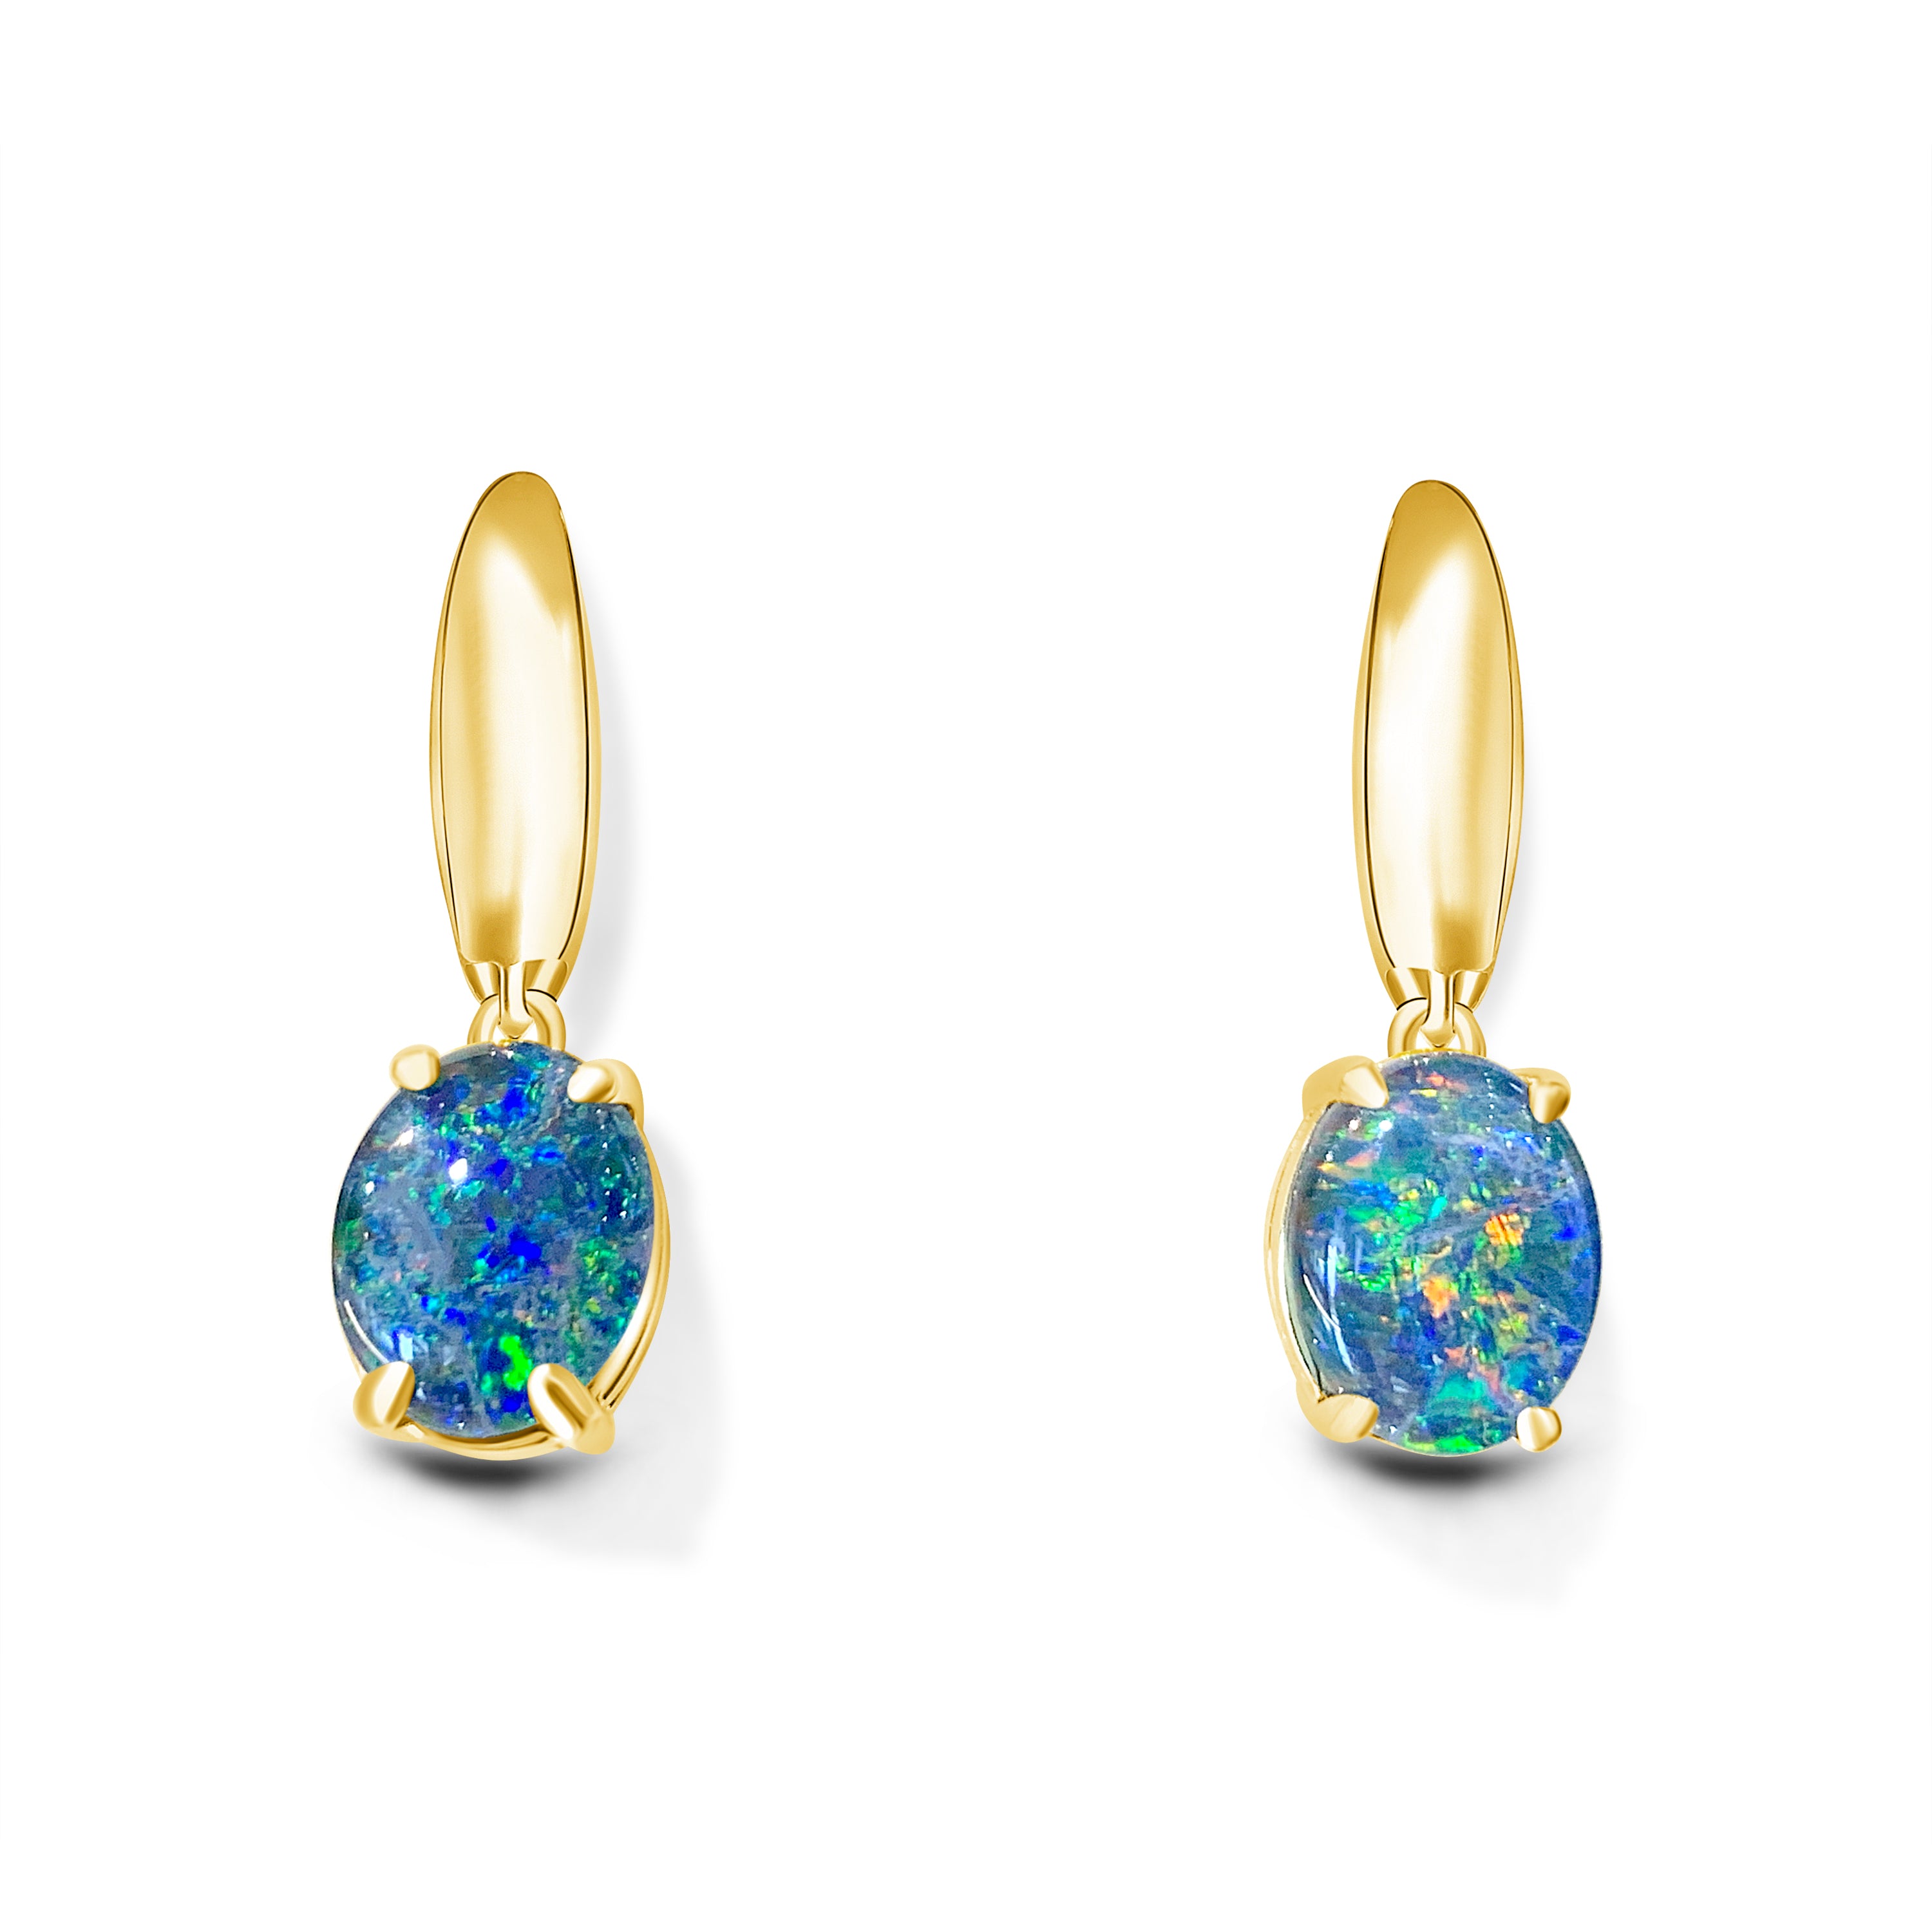 Gold Plated Silver dangling Oval 10x8mm Opal triplets - Masterpiece Jewellery Opal & Gems Sydney Australia | Online Shop